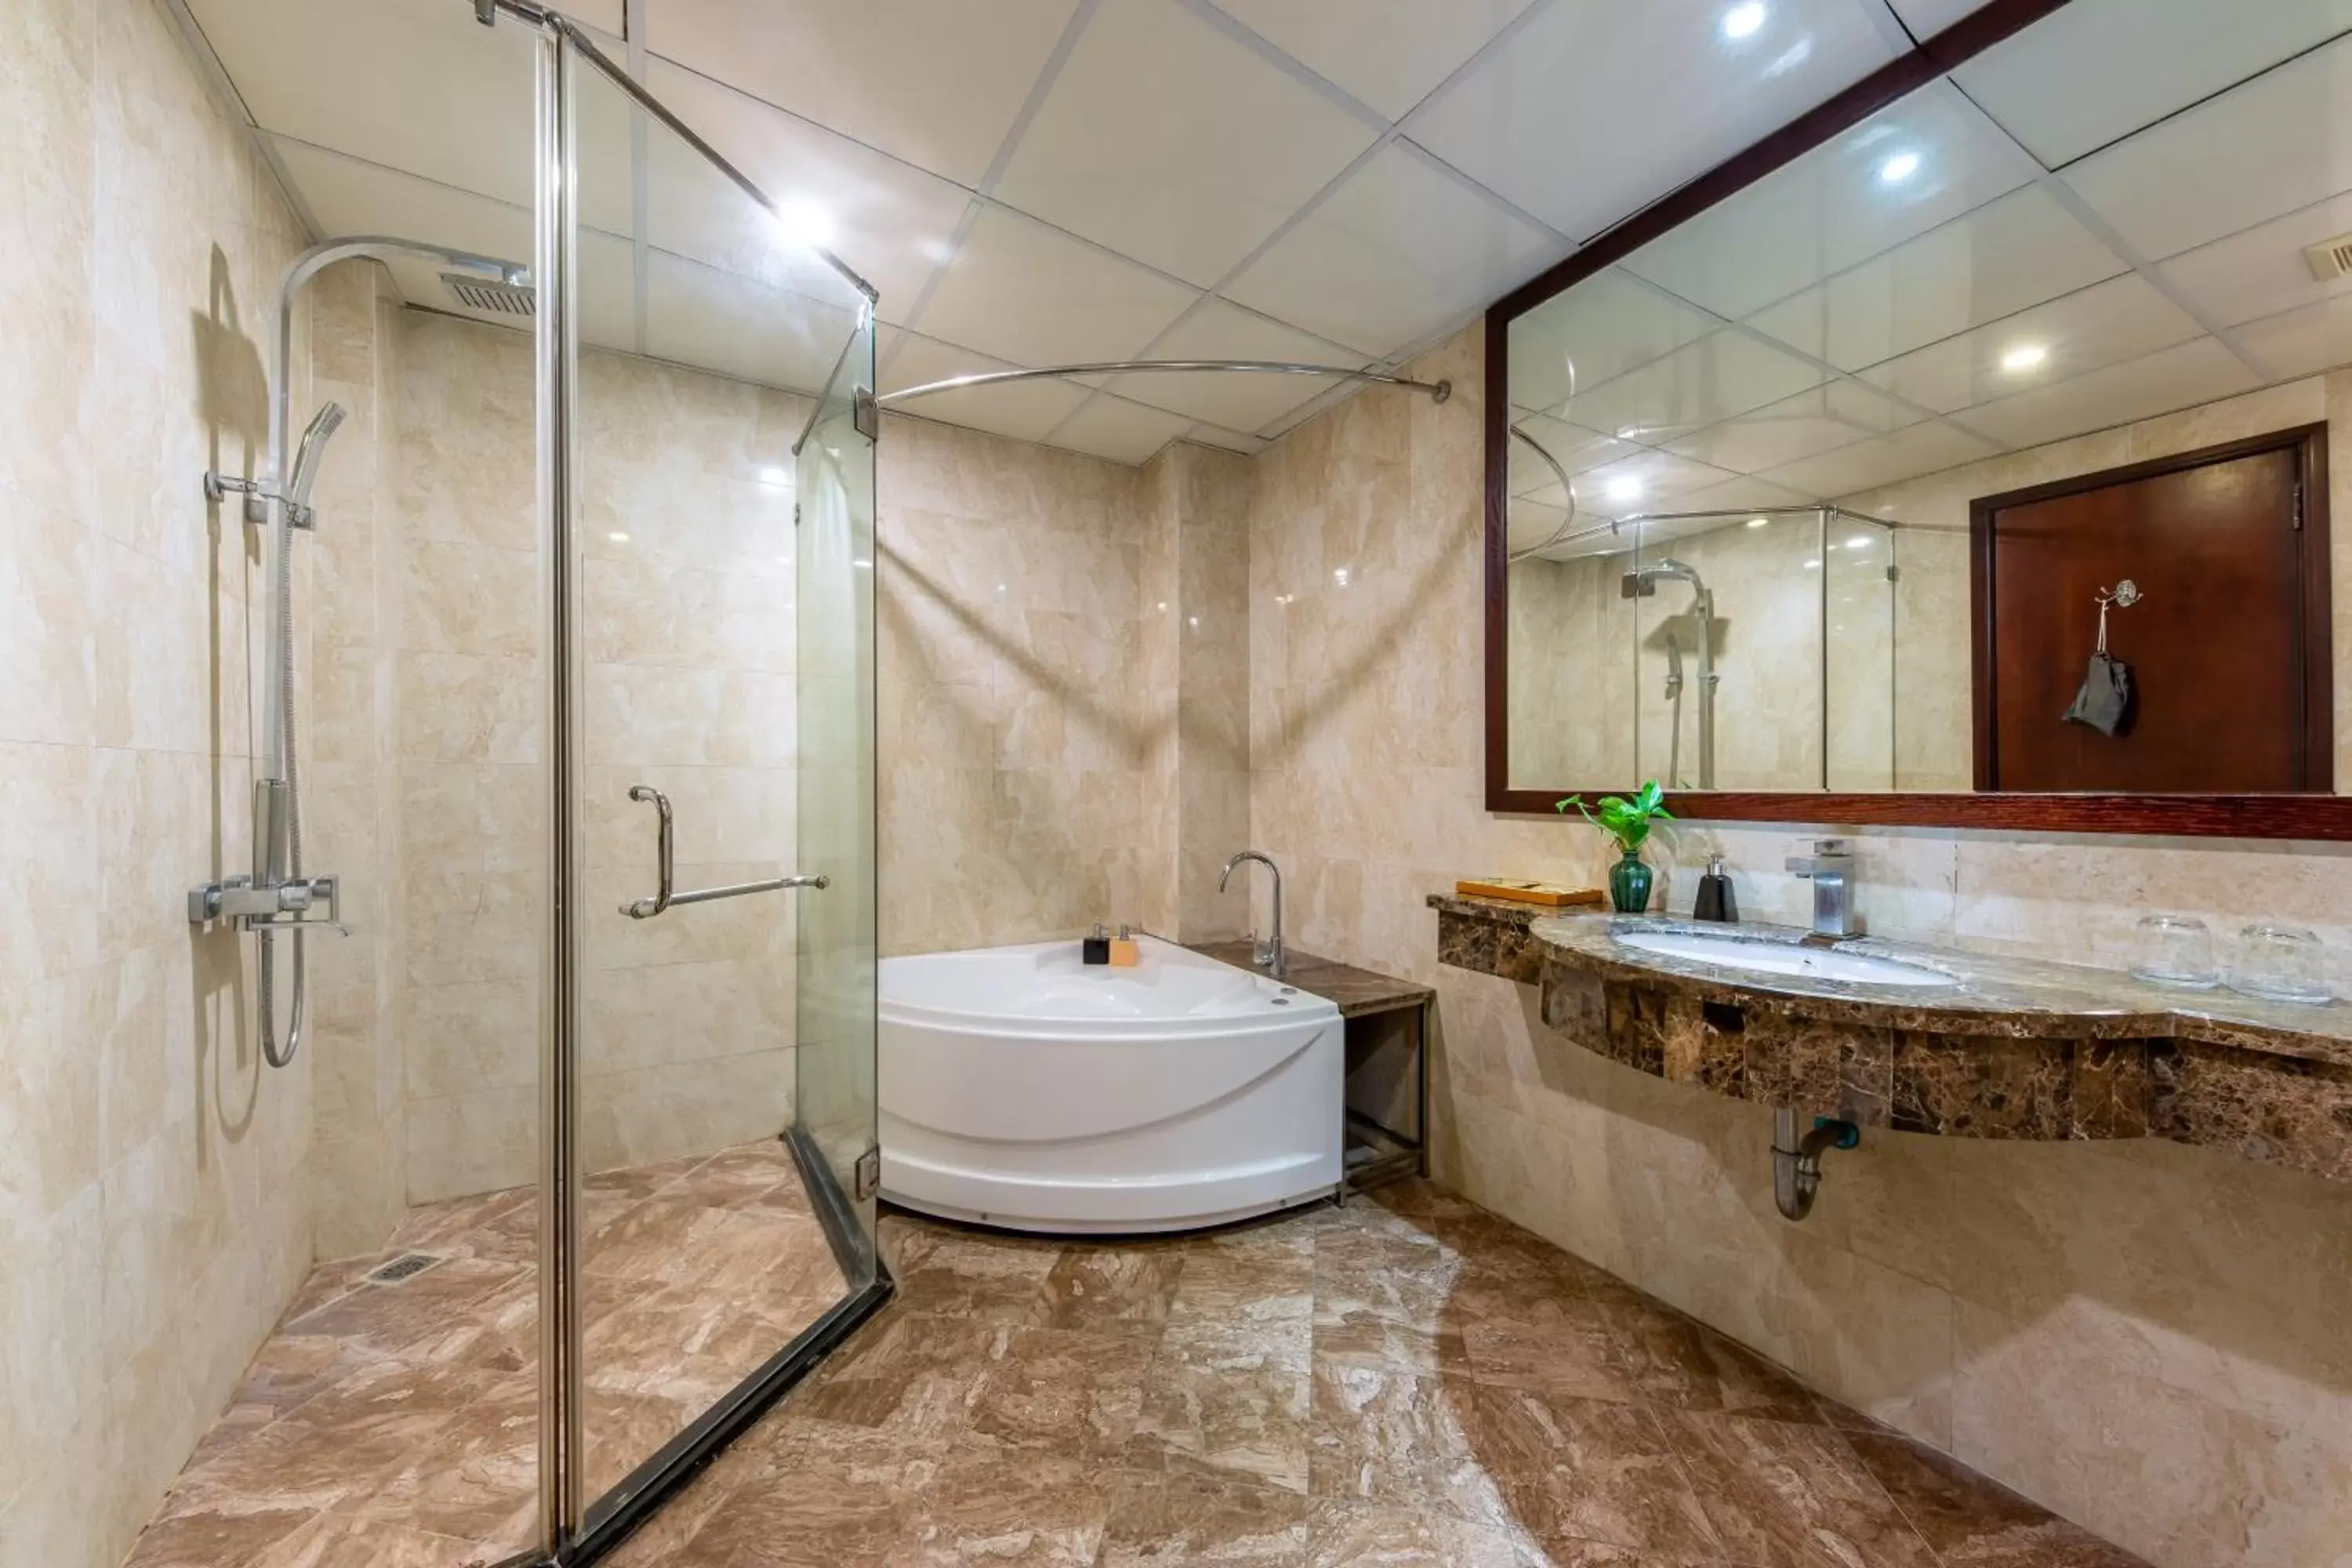 Toilet, Bathroom in Babylon Grand Hotel & Spa